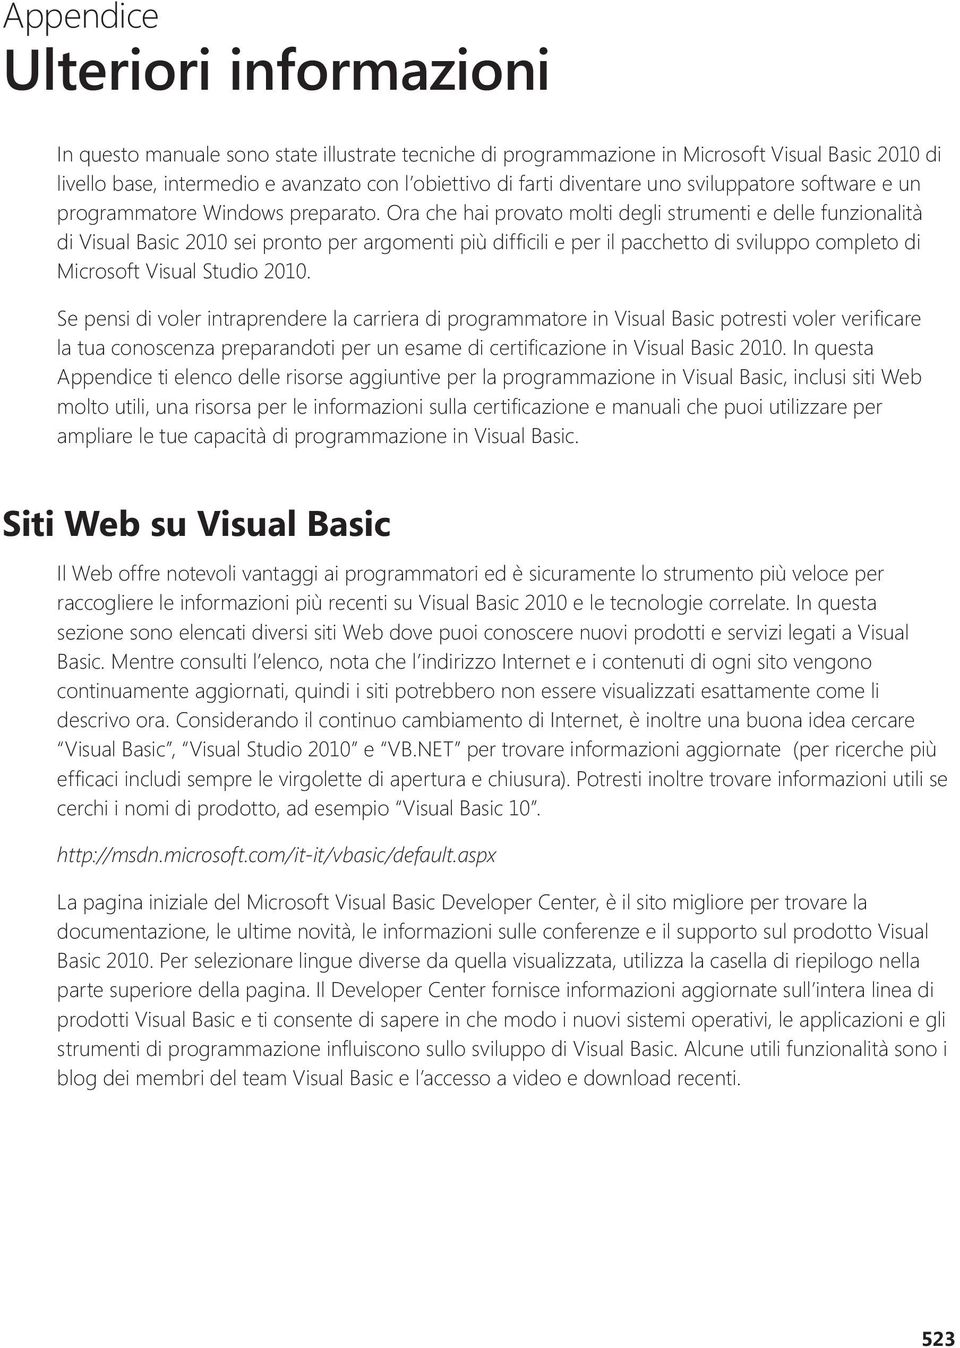 Ora che hai provato molti degli strumenti e delle funzionalità di Visual Basic 2010 sei pronto per argomenti più diffi cili e per il pacchetto di sviluppo completo di Microsoft Visual Studio 2010.